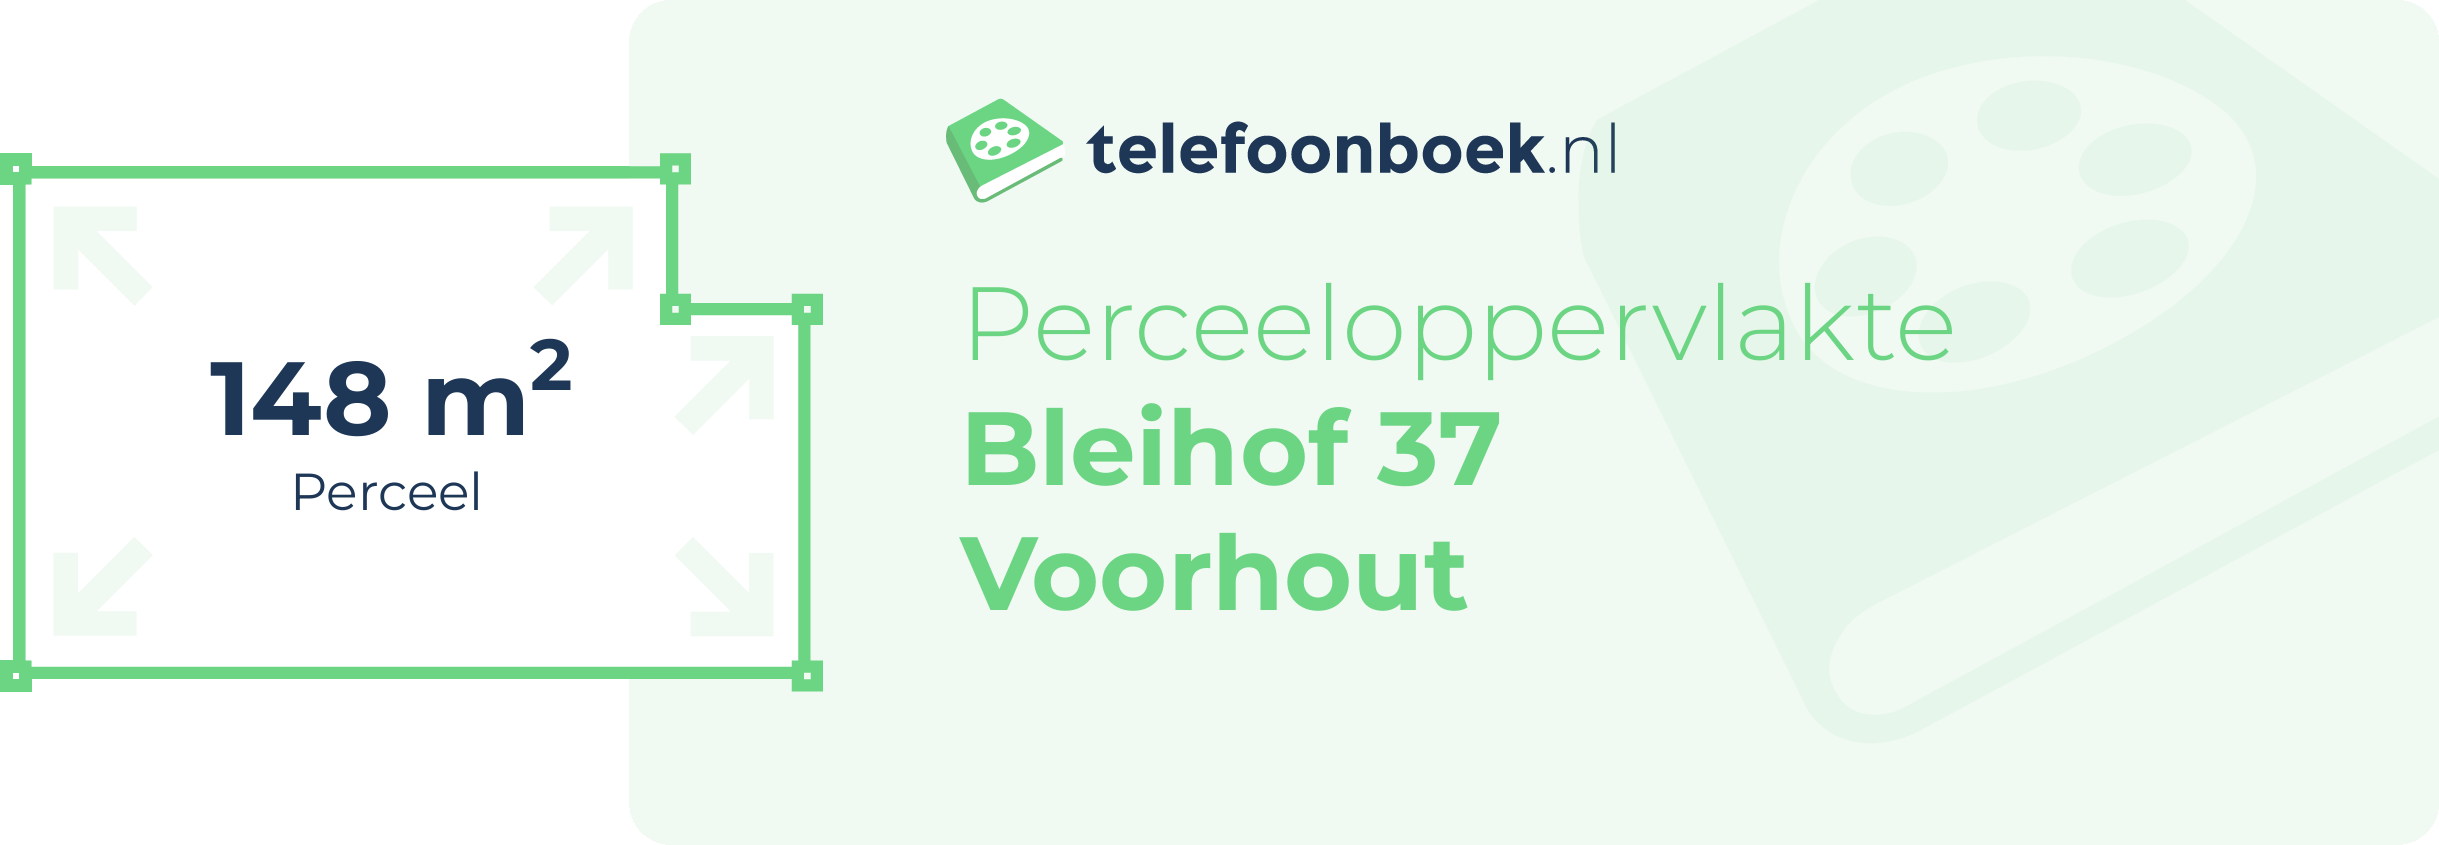 Perceeloppervlakte Bleihof 37 Voorhout